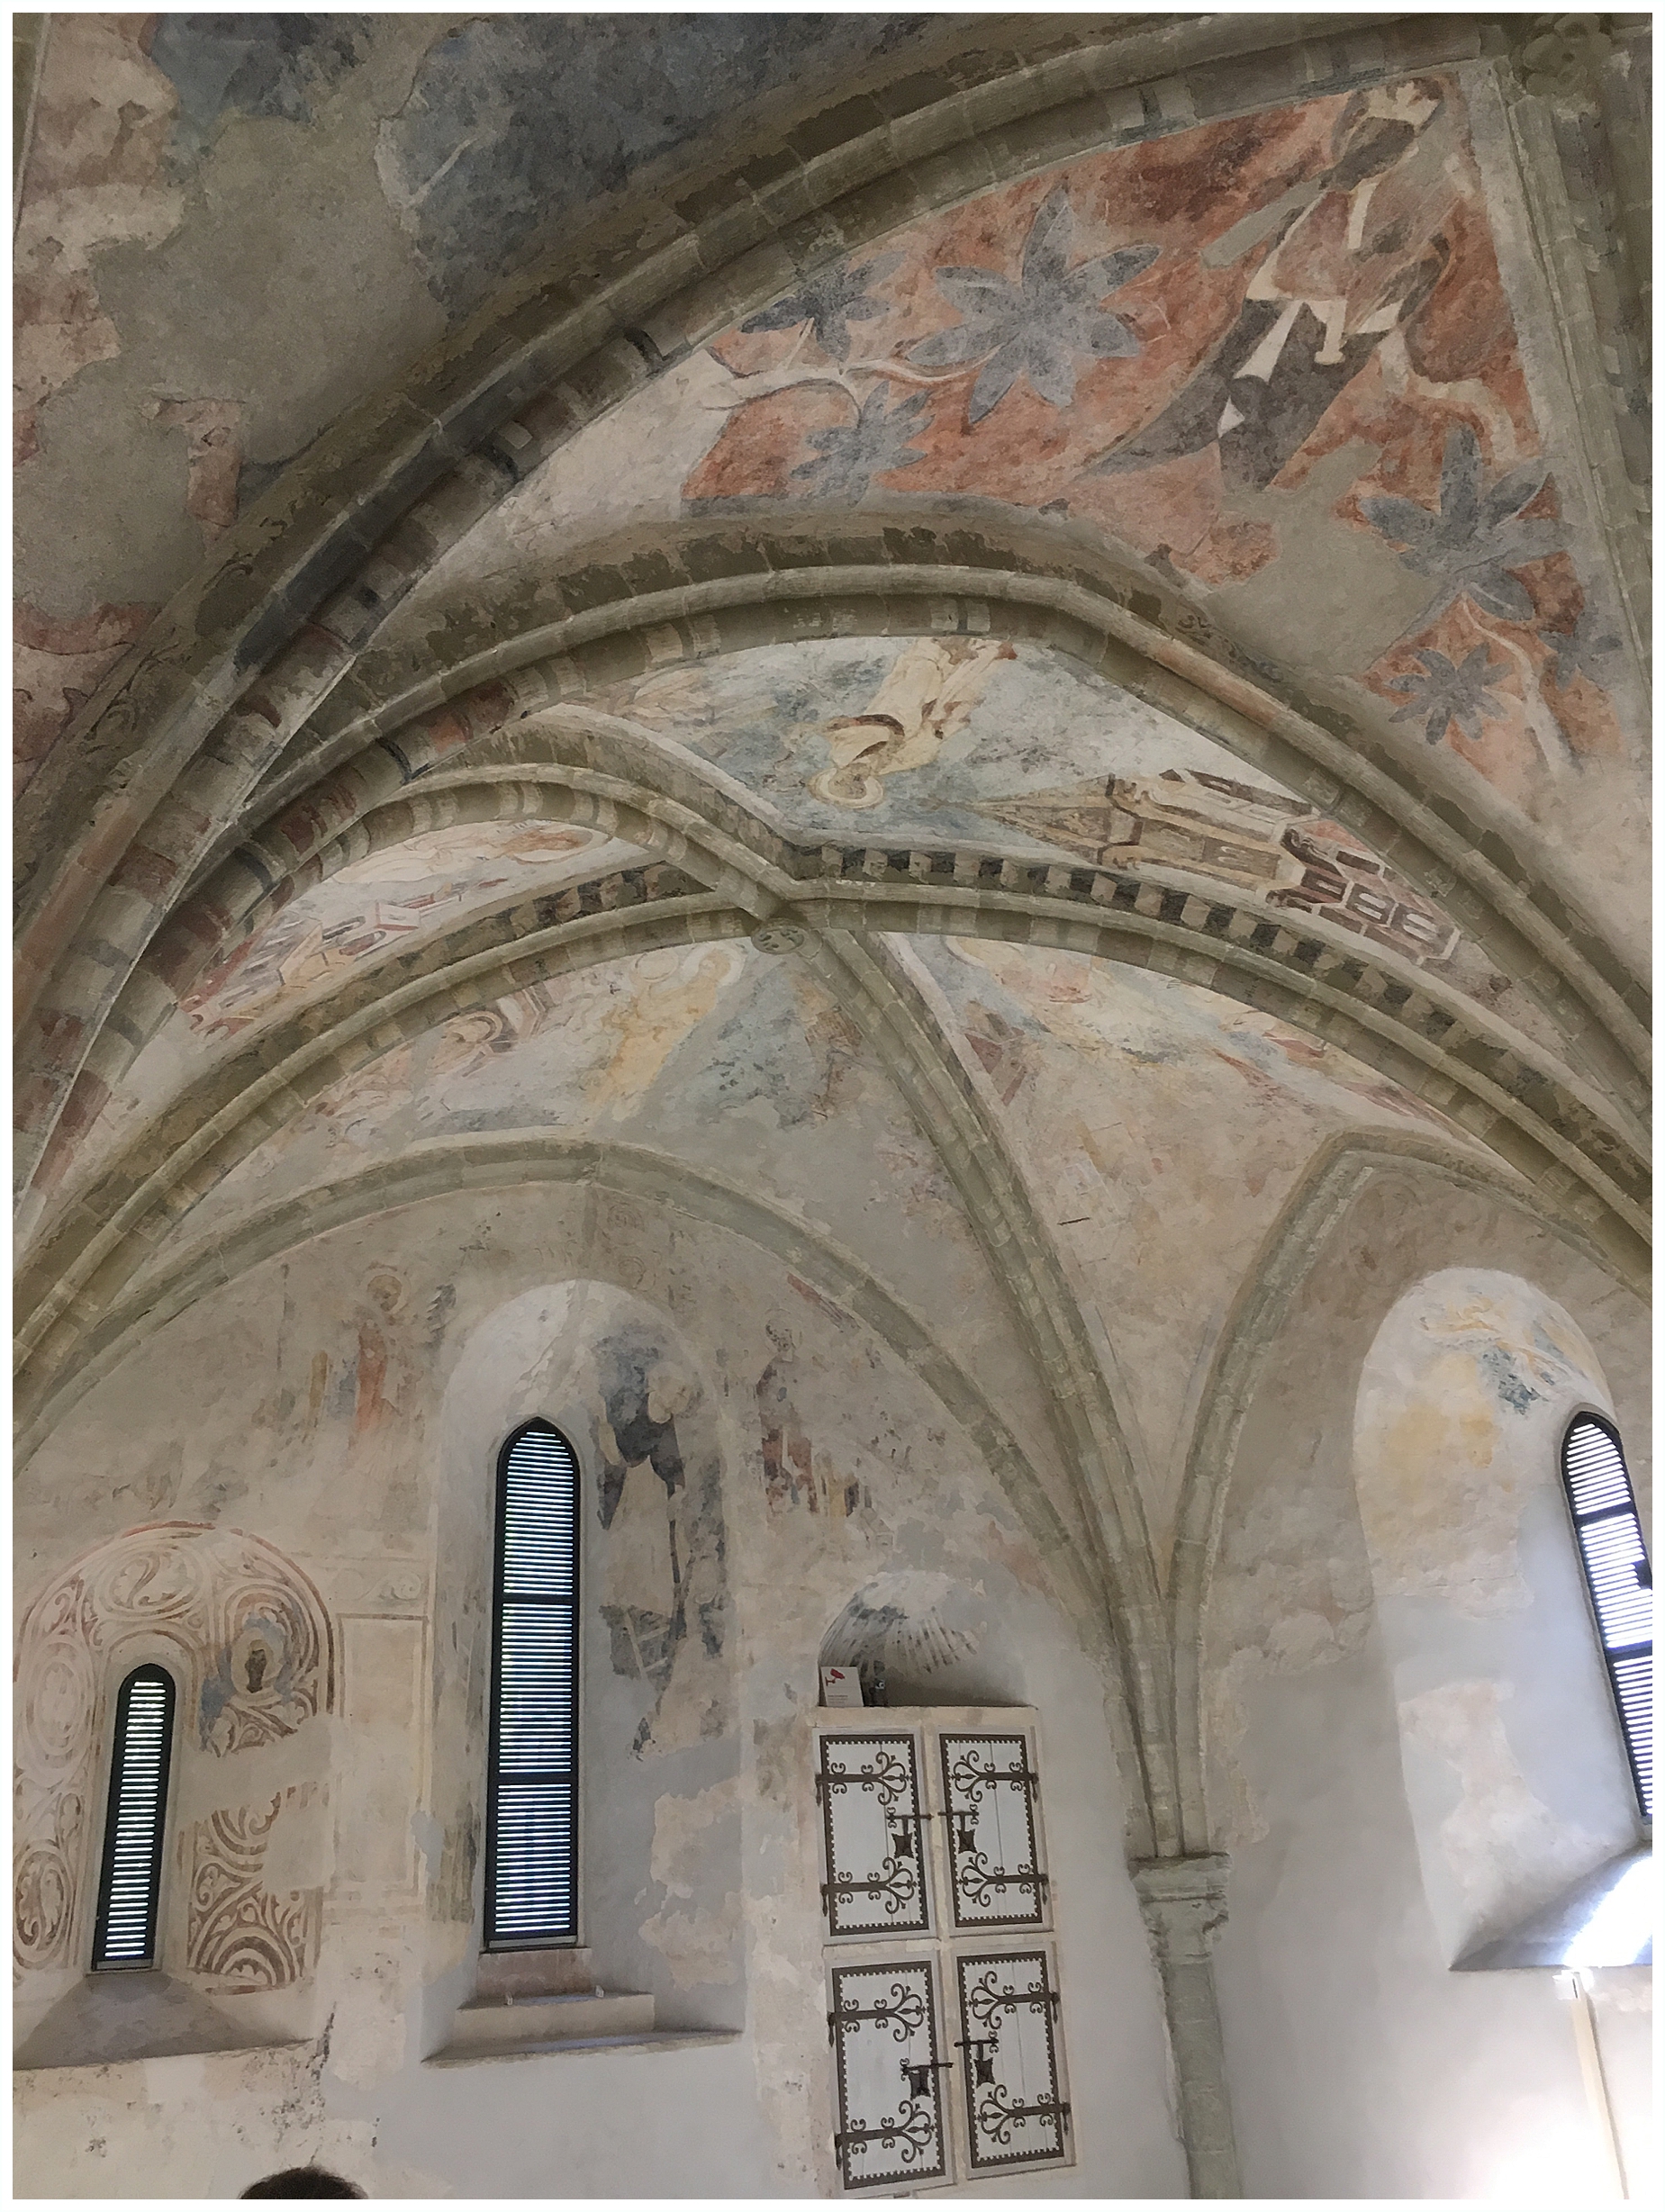 Chateau de Chillon vaulted chapel ceilings